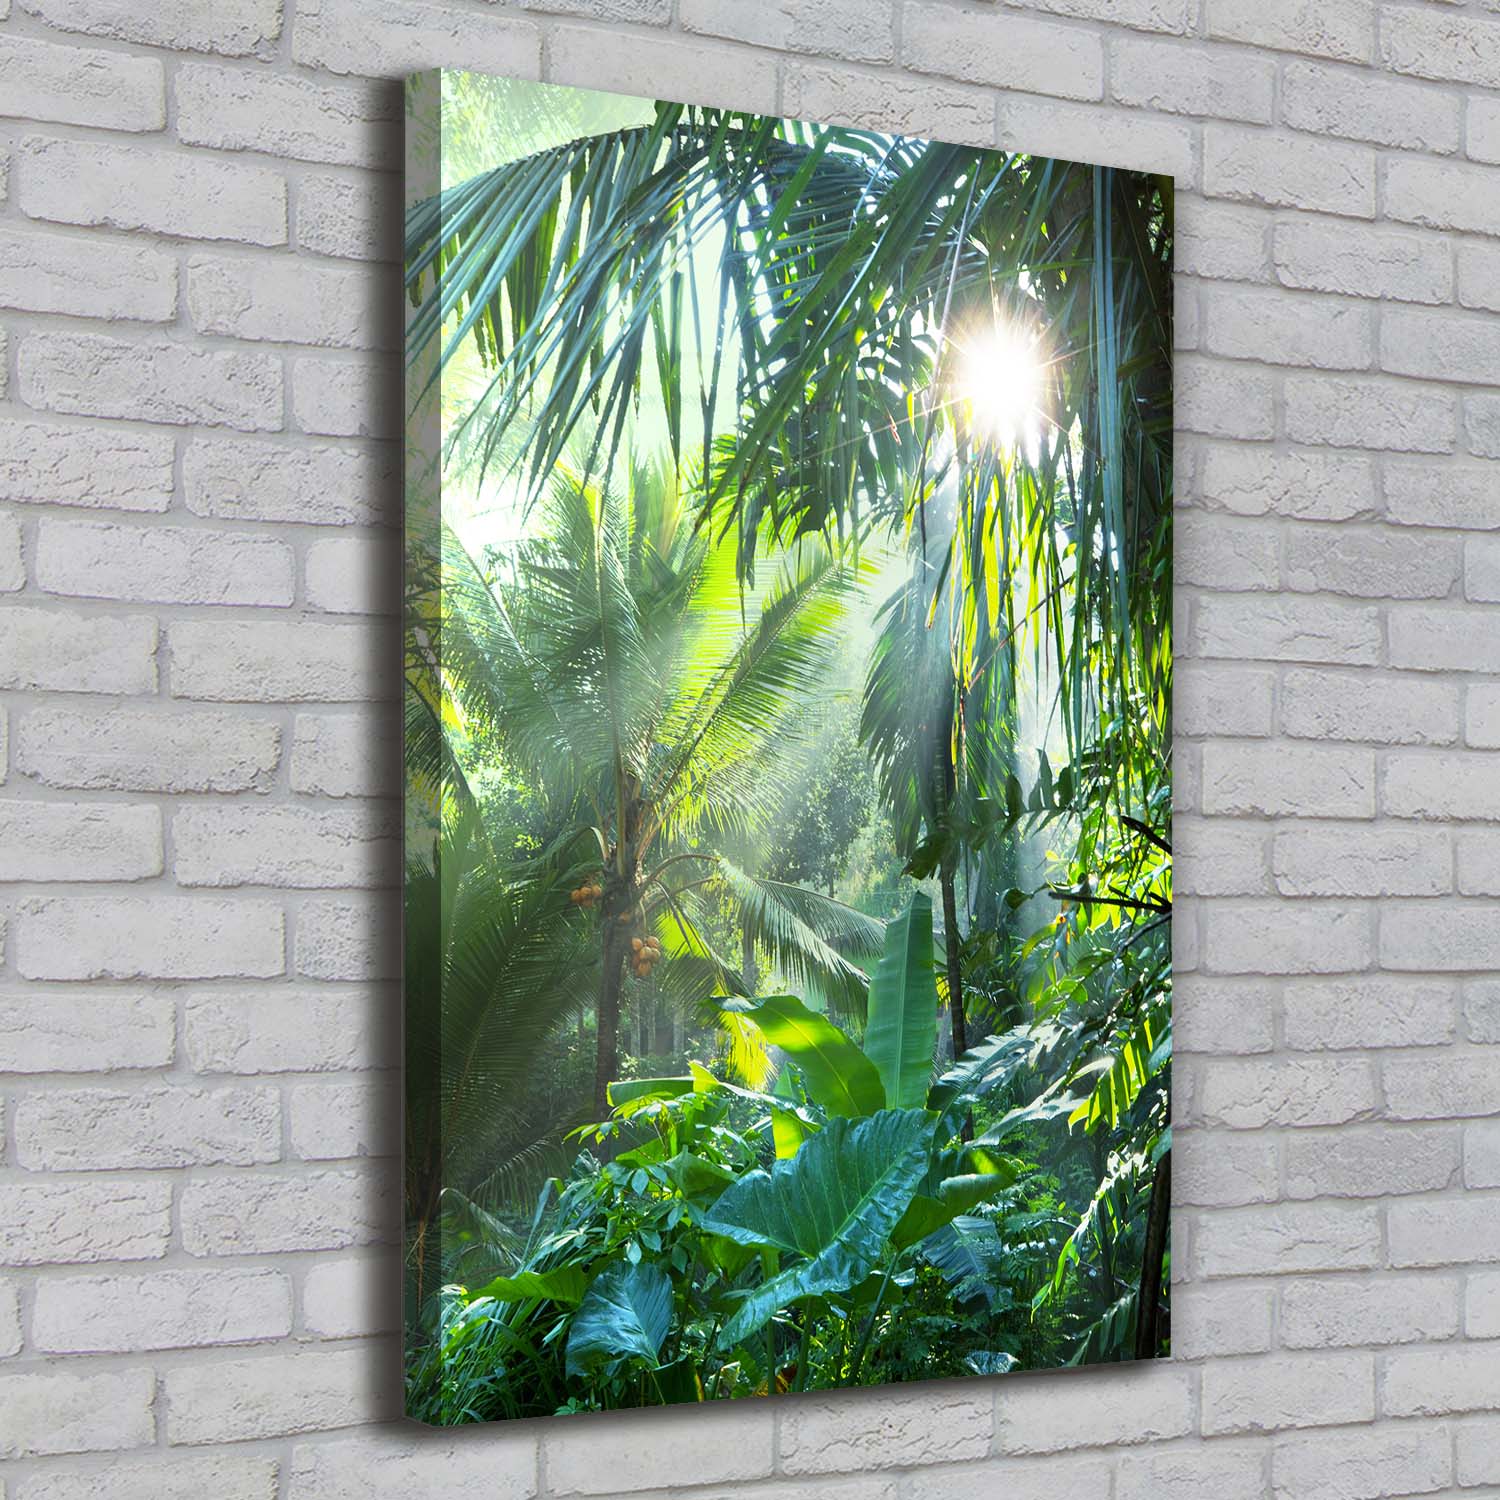 Leinwand-Bild Kunstdruck Hochformat 70x100 Bilder Dschungel